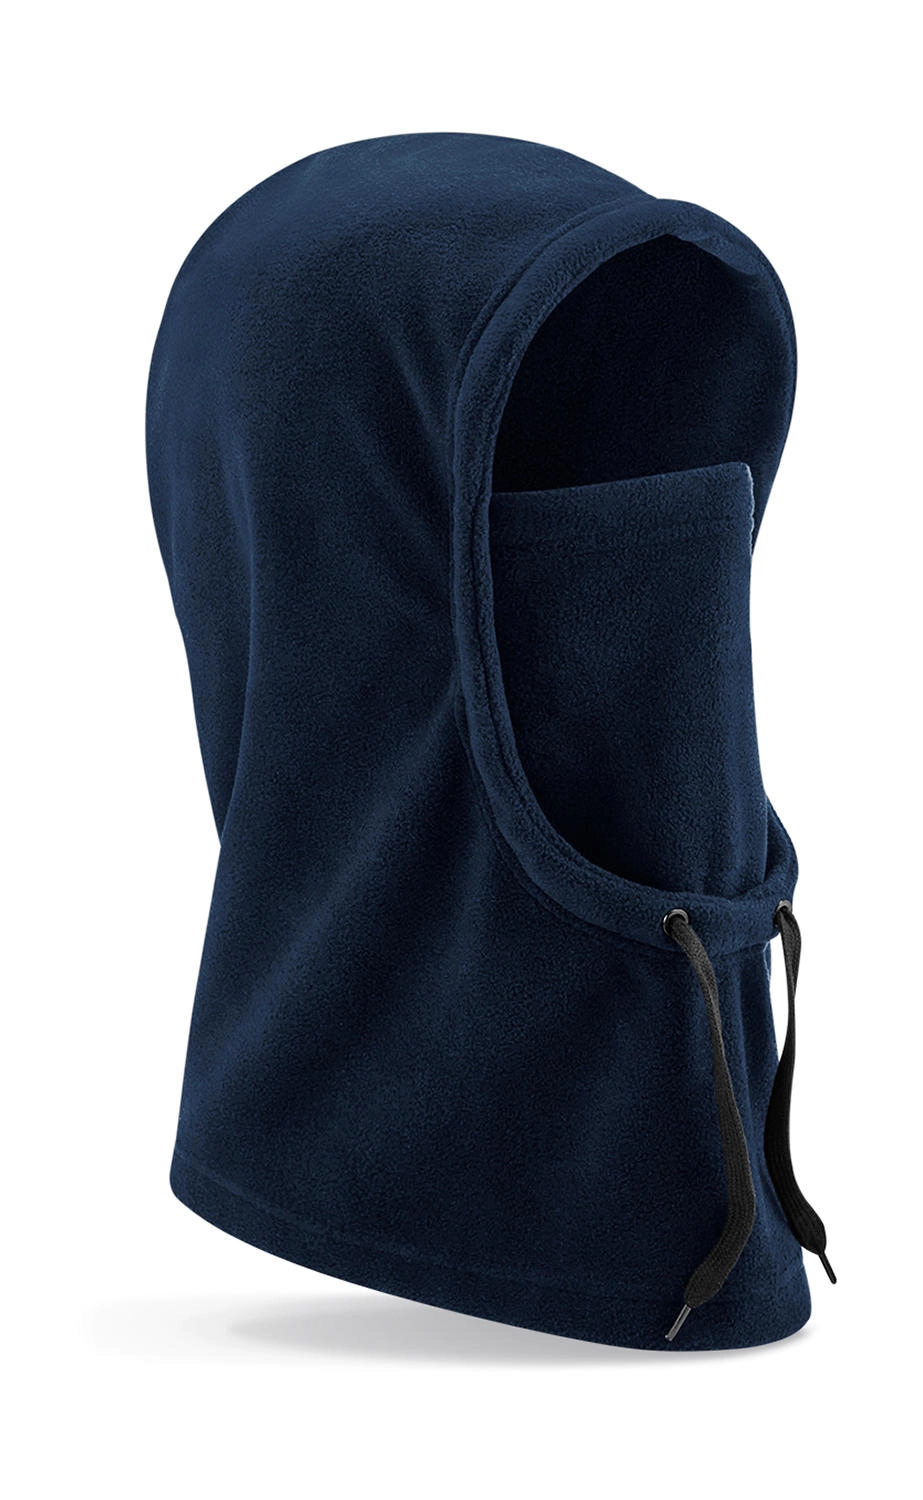 Recycled Fleece Hood zum Besticken und Bedrucken in der Farbe French Navy mit Ihren Logo, Schriftzug oder Motiv.